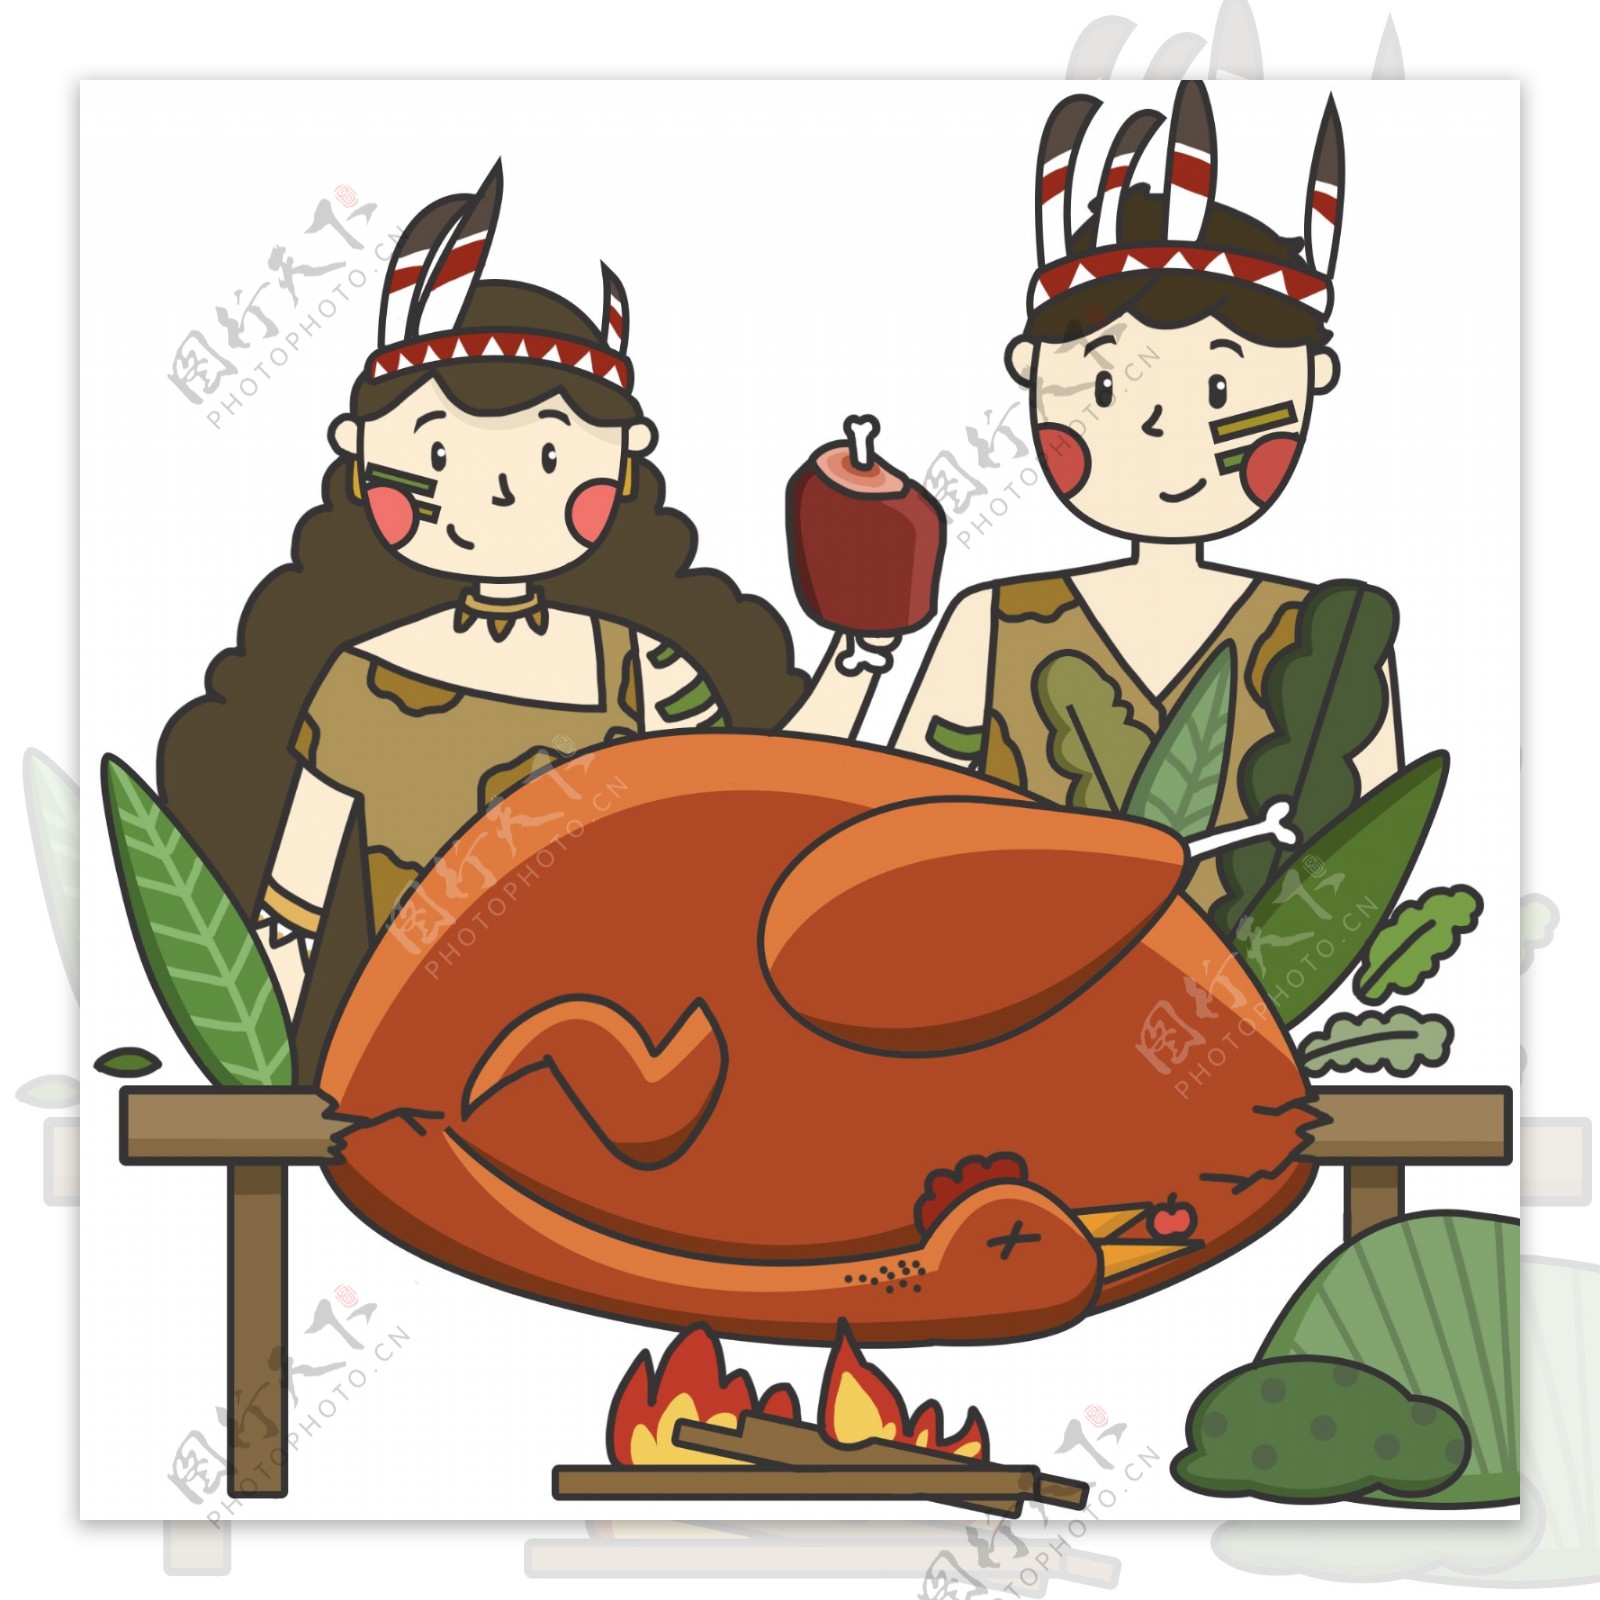 卡通手绘节日感恩节烤火鸡的原始人